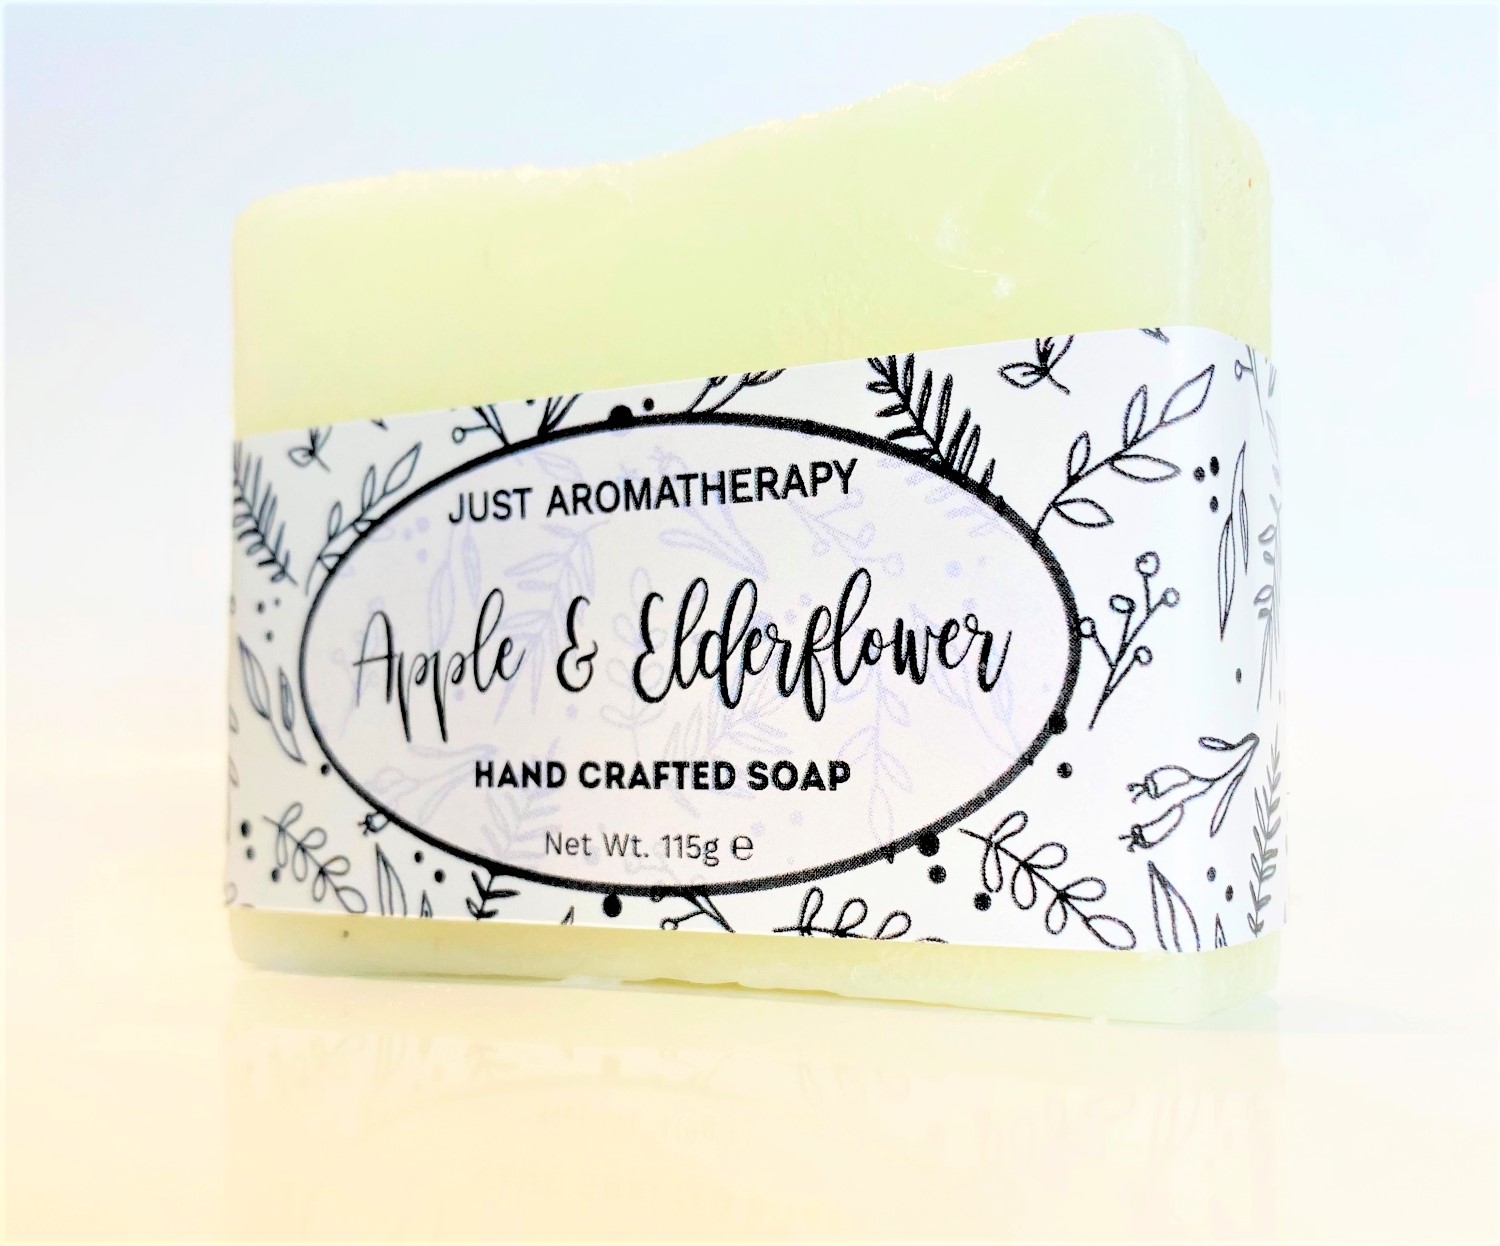 Apple & Elderflower - Wild & Natural Hand Crafted Soap